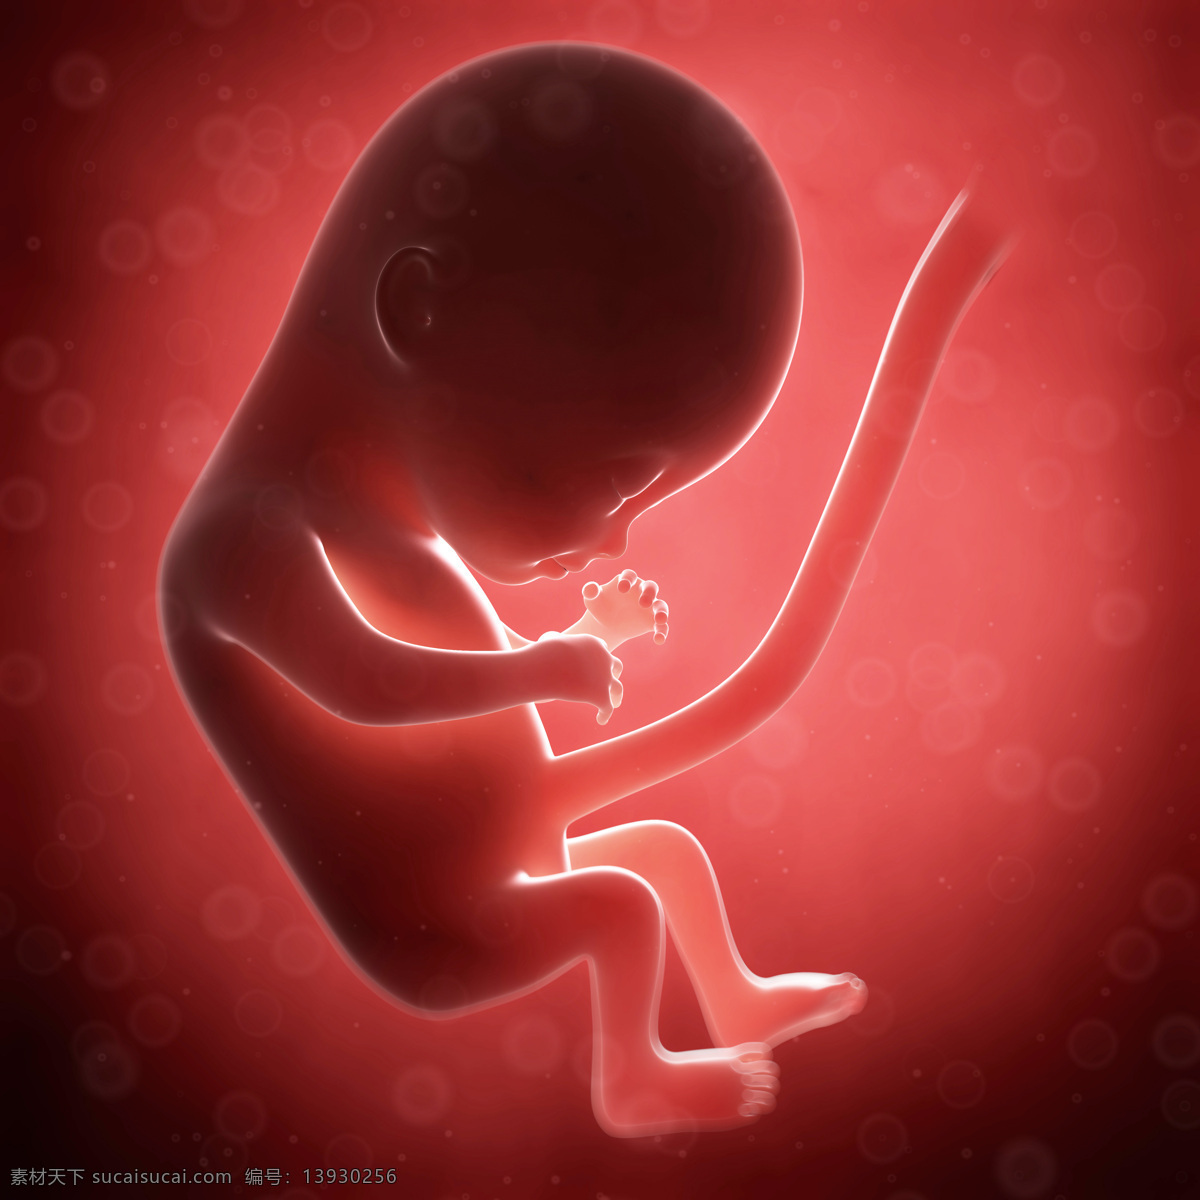 发育中的胚胎 唯美 炫酷 3d 胚胎 发育 婴儿 早期婴儿 初期婴儿 怀孕 子宫里的婴儿 产科 妇产科 早期胚胎 科学 医疗 生命延续 3d设计